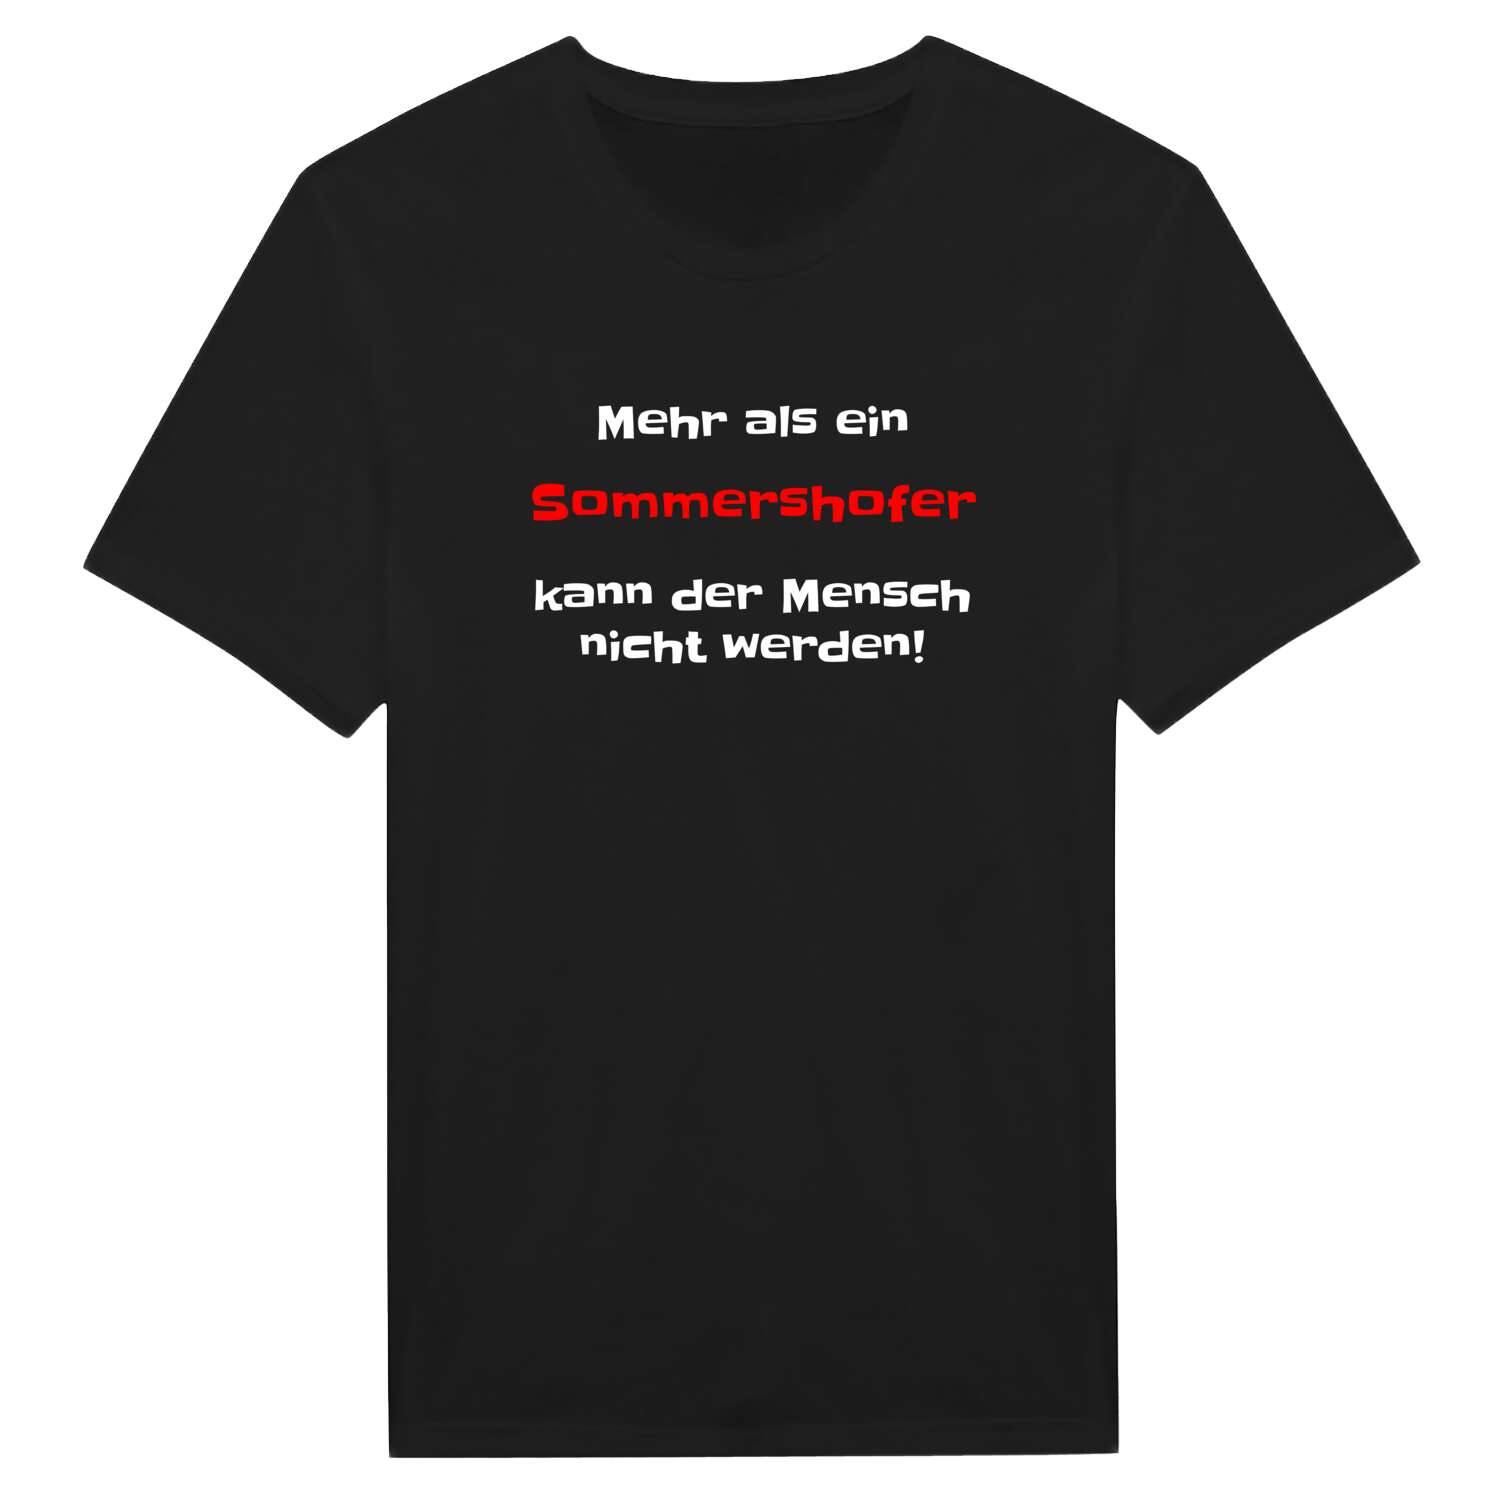 Sommershof T-Shirt »Mehr als ein«